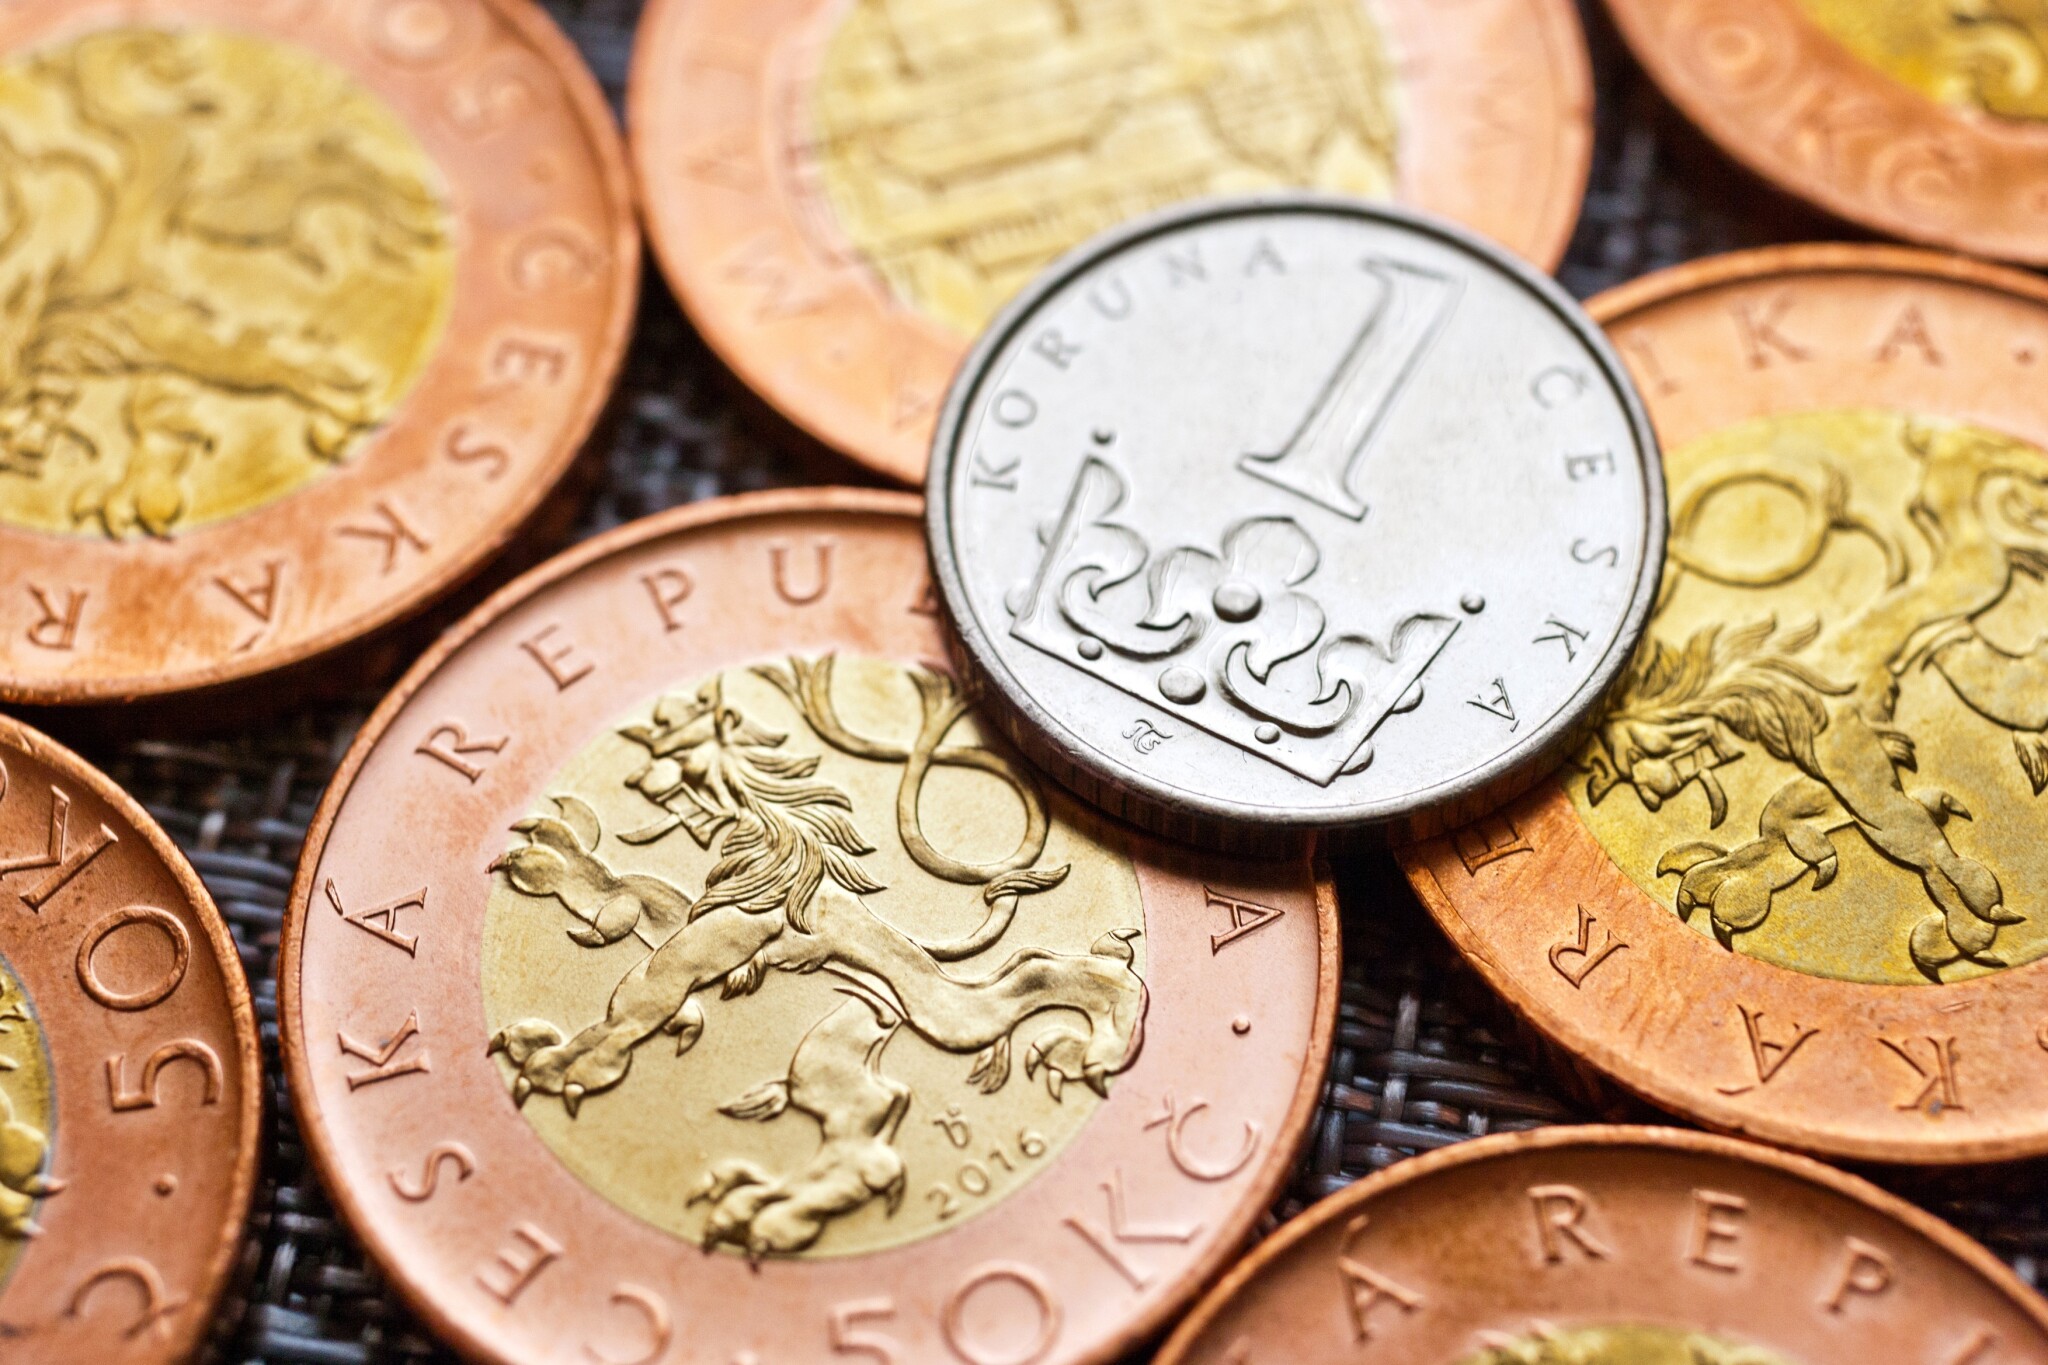 ČNB loni nechala vyrazit 31,2 milionu oběžných mincí. Je to nejméně od vzniku Česka